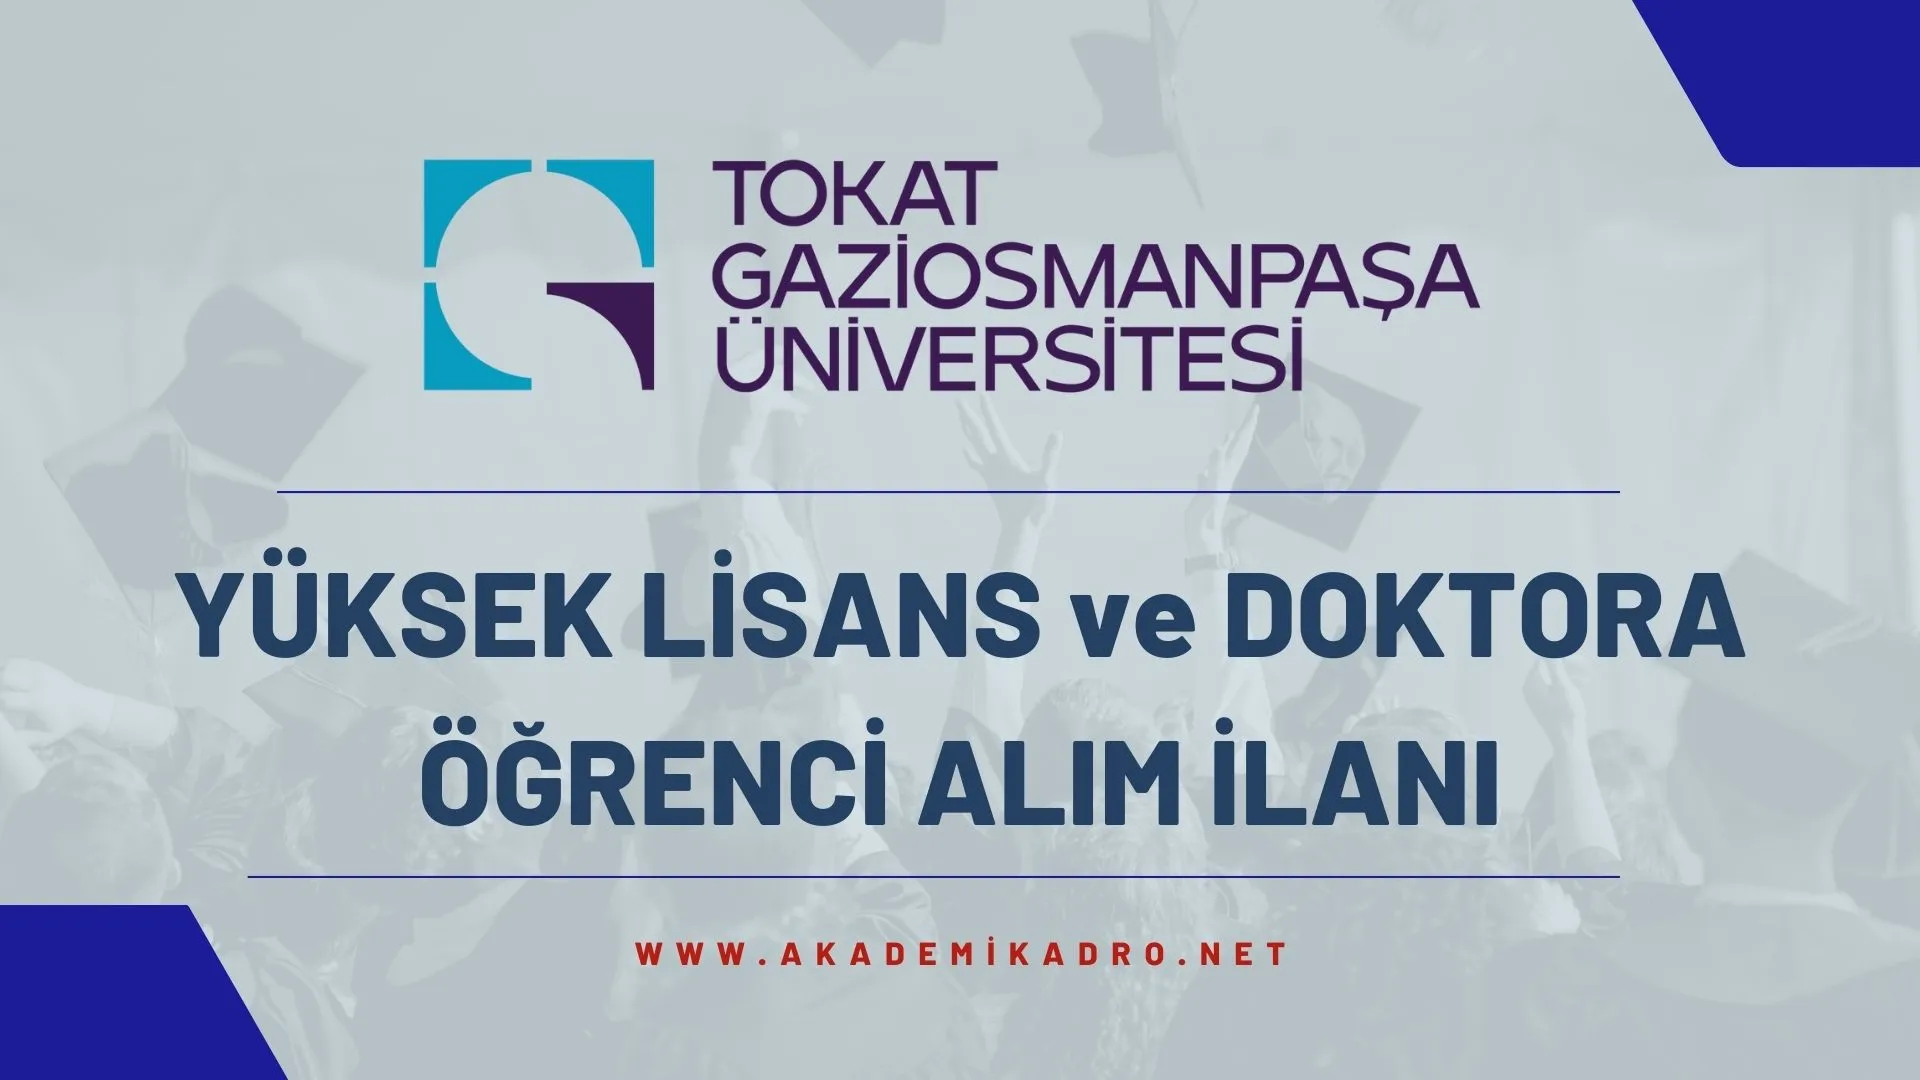 Tokat Gaziosmanpaşa Üniversitesi 2022-2023 bahar döneminde lisansüstü programlara öğrenci alacaktır.